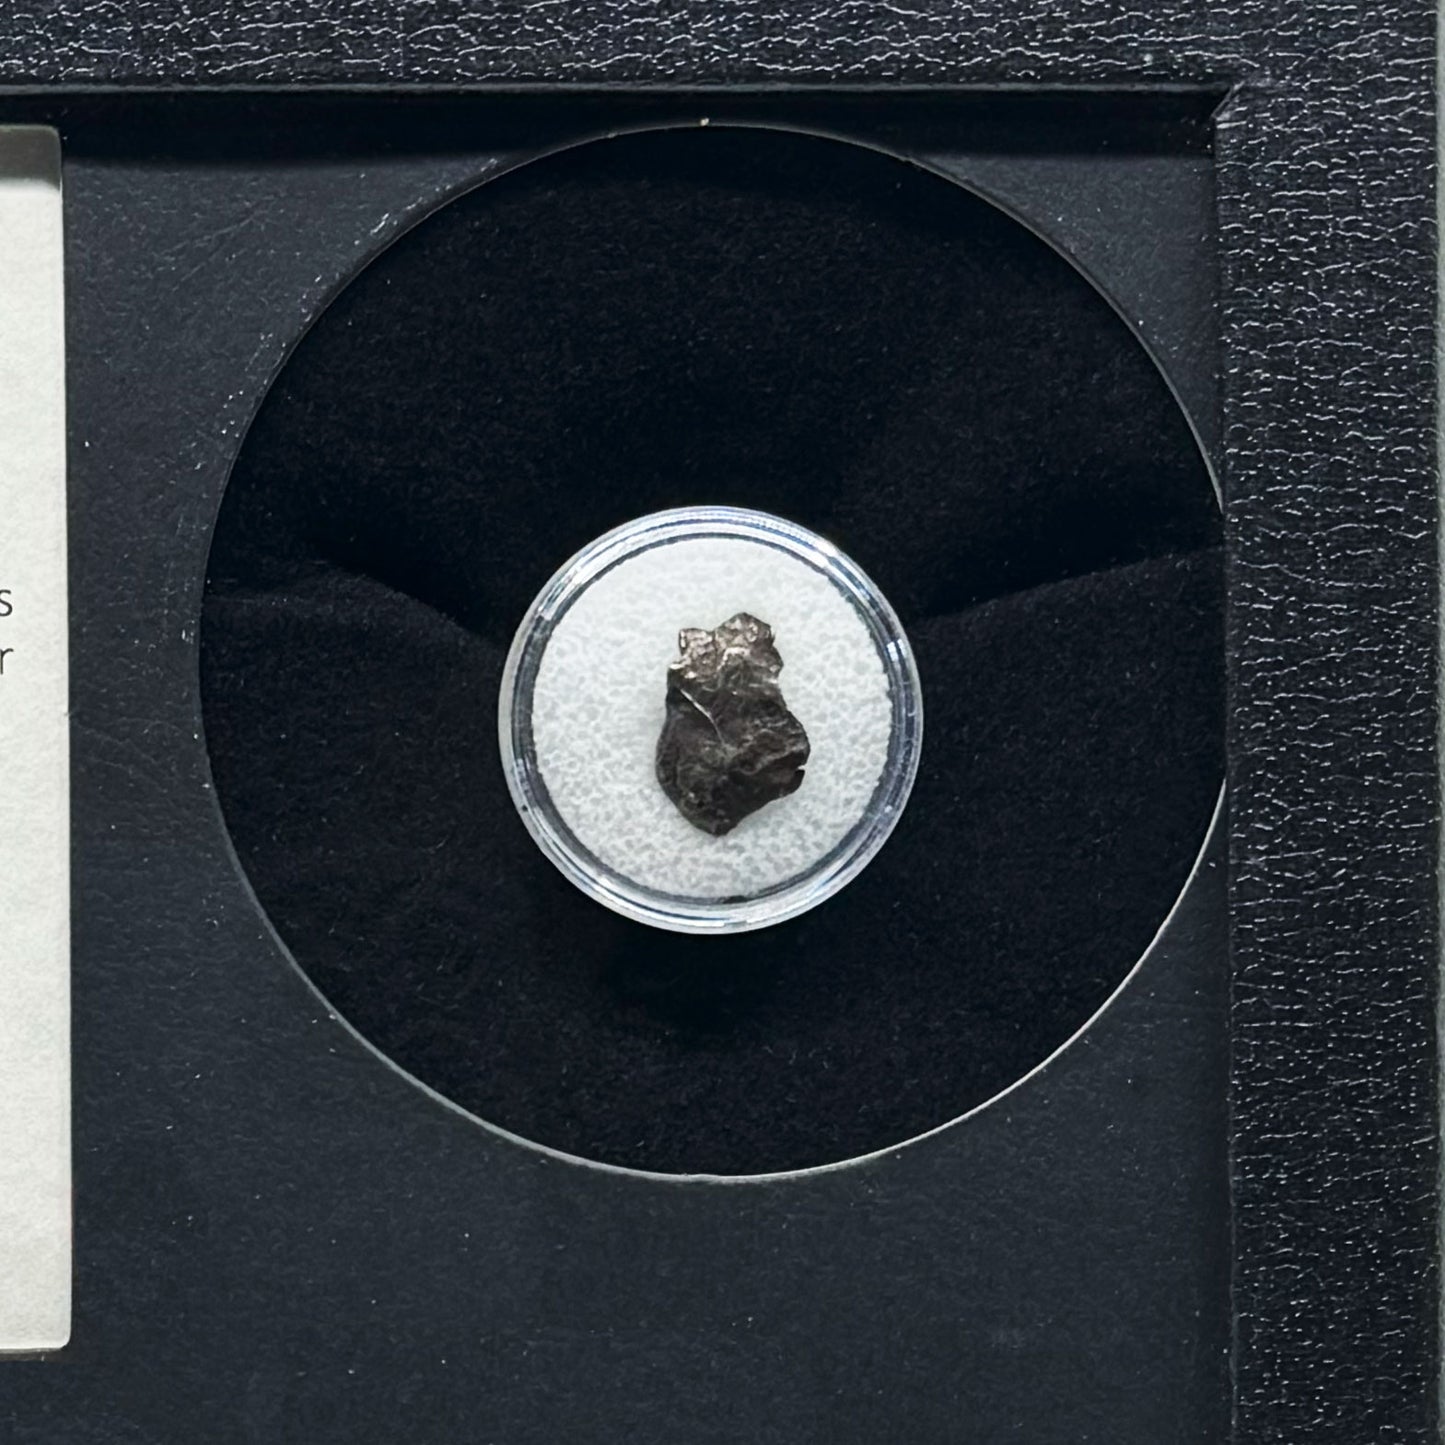 Meteorito Sikhote-Alin en caja de coleccionista